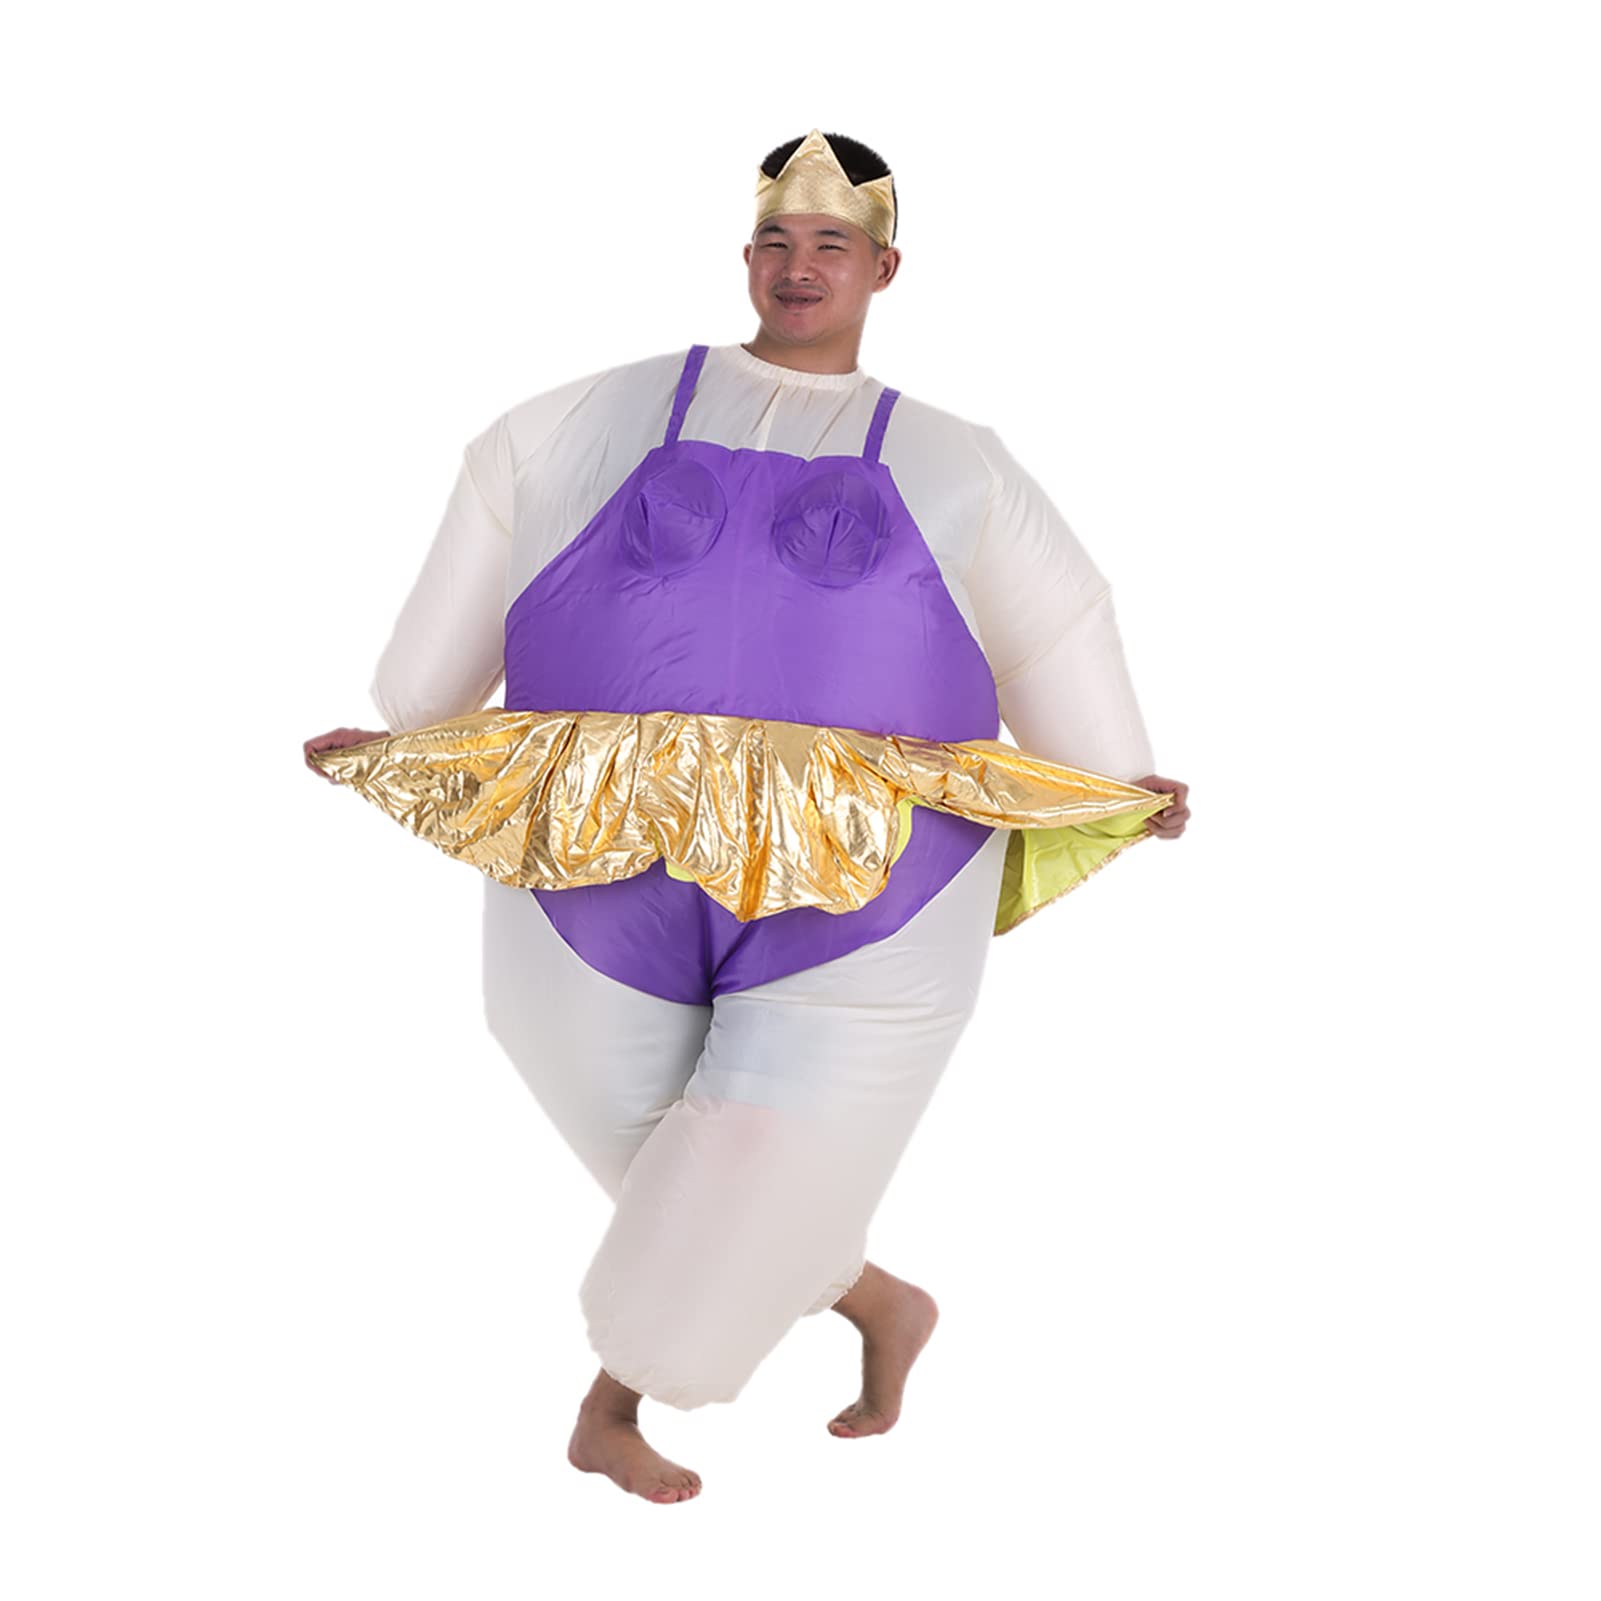 Staright Netter erwachsener aufblasbarer Ballerina-Kostüm-fetter Anzug für Frauen/Männer Lüfter betriebenes Explosions-Halloween-Partei-fantastisches Overall-Outfit